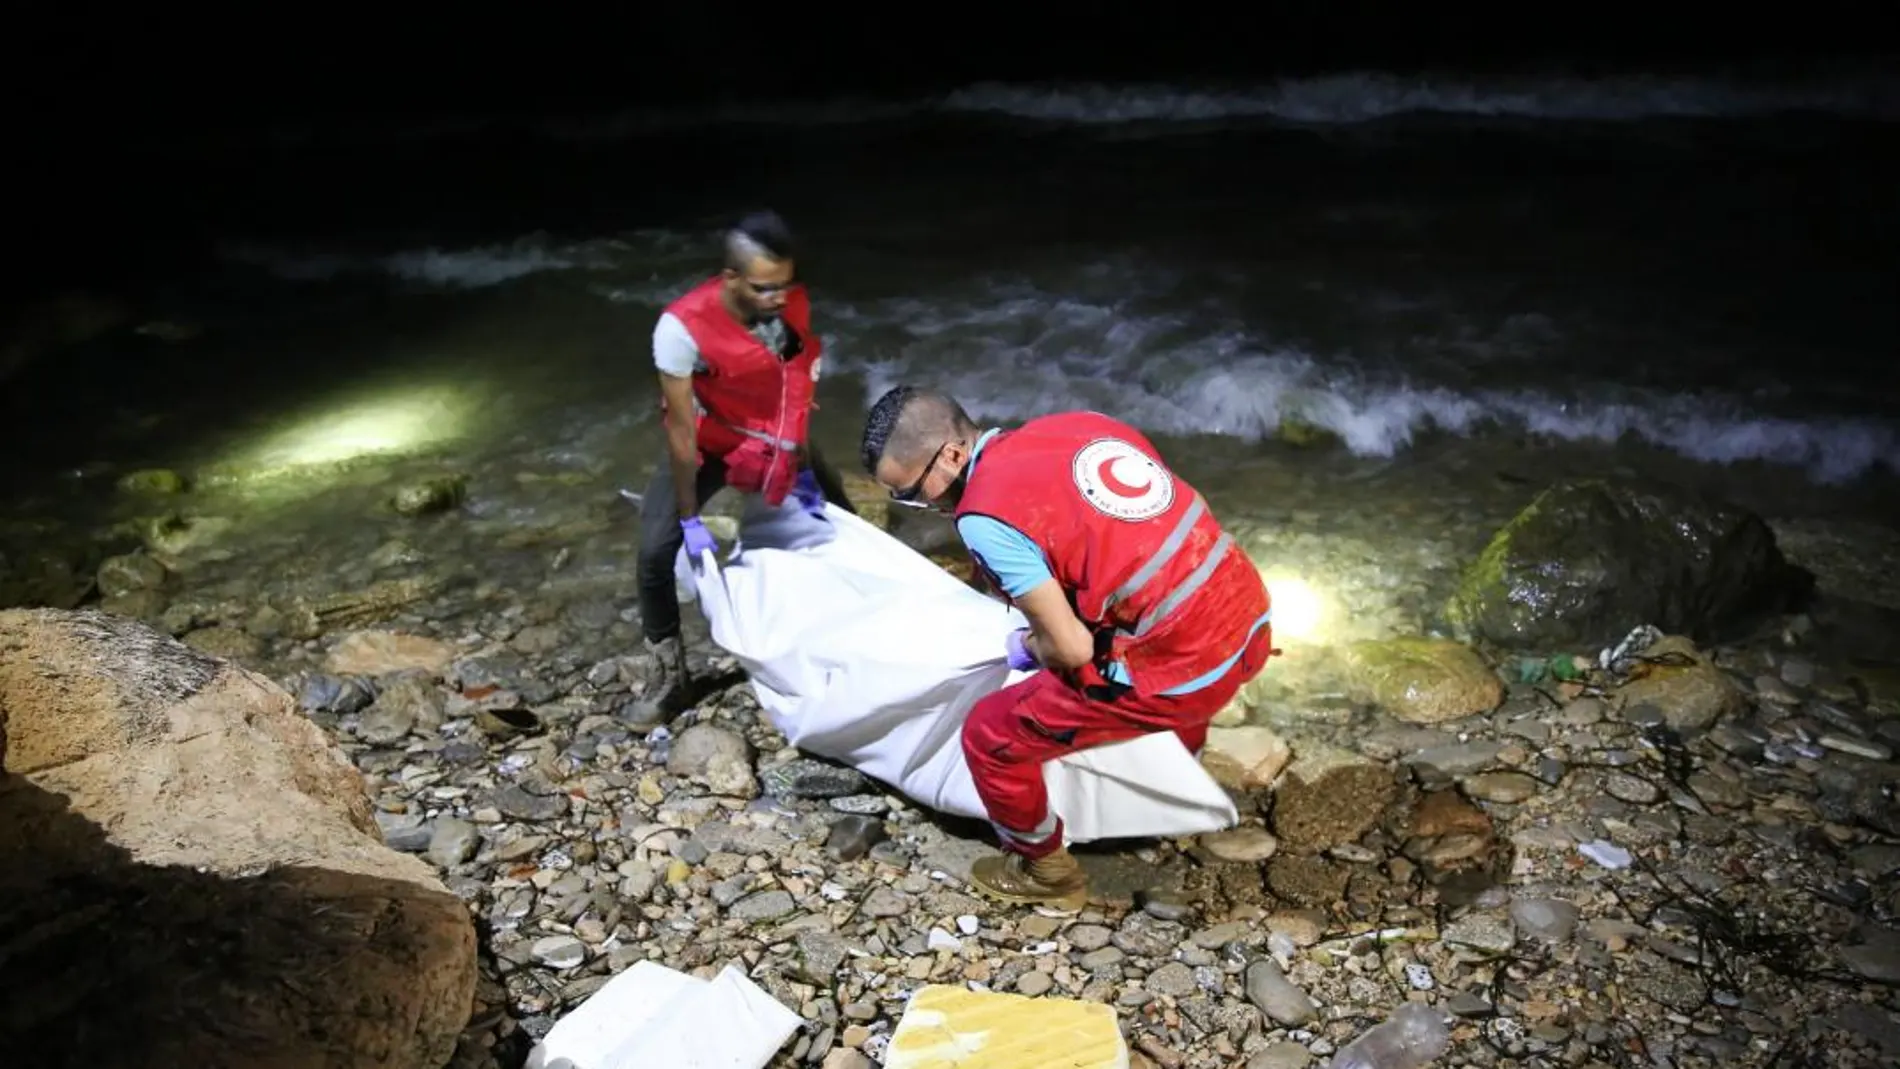 Personal de rescate de la Media Luna Roja Libia (LRC según sus siglas en inglés) transportan el cuerpo de un inmigrante fallecido ahogado en la playa de Tajura, a 14km de Tripli, Libia, el 2 de julio de 2018